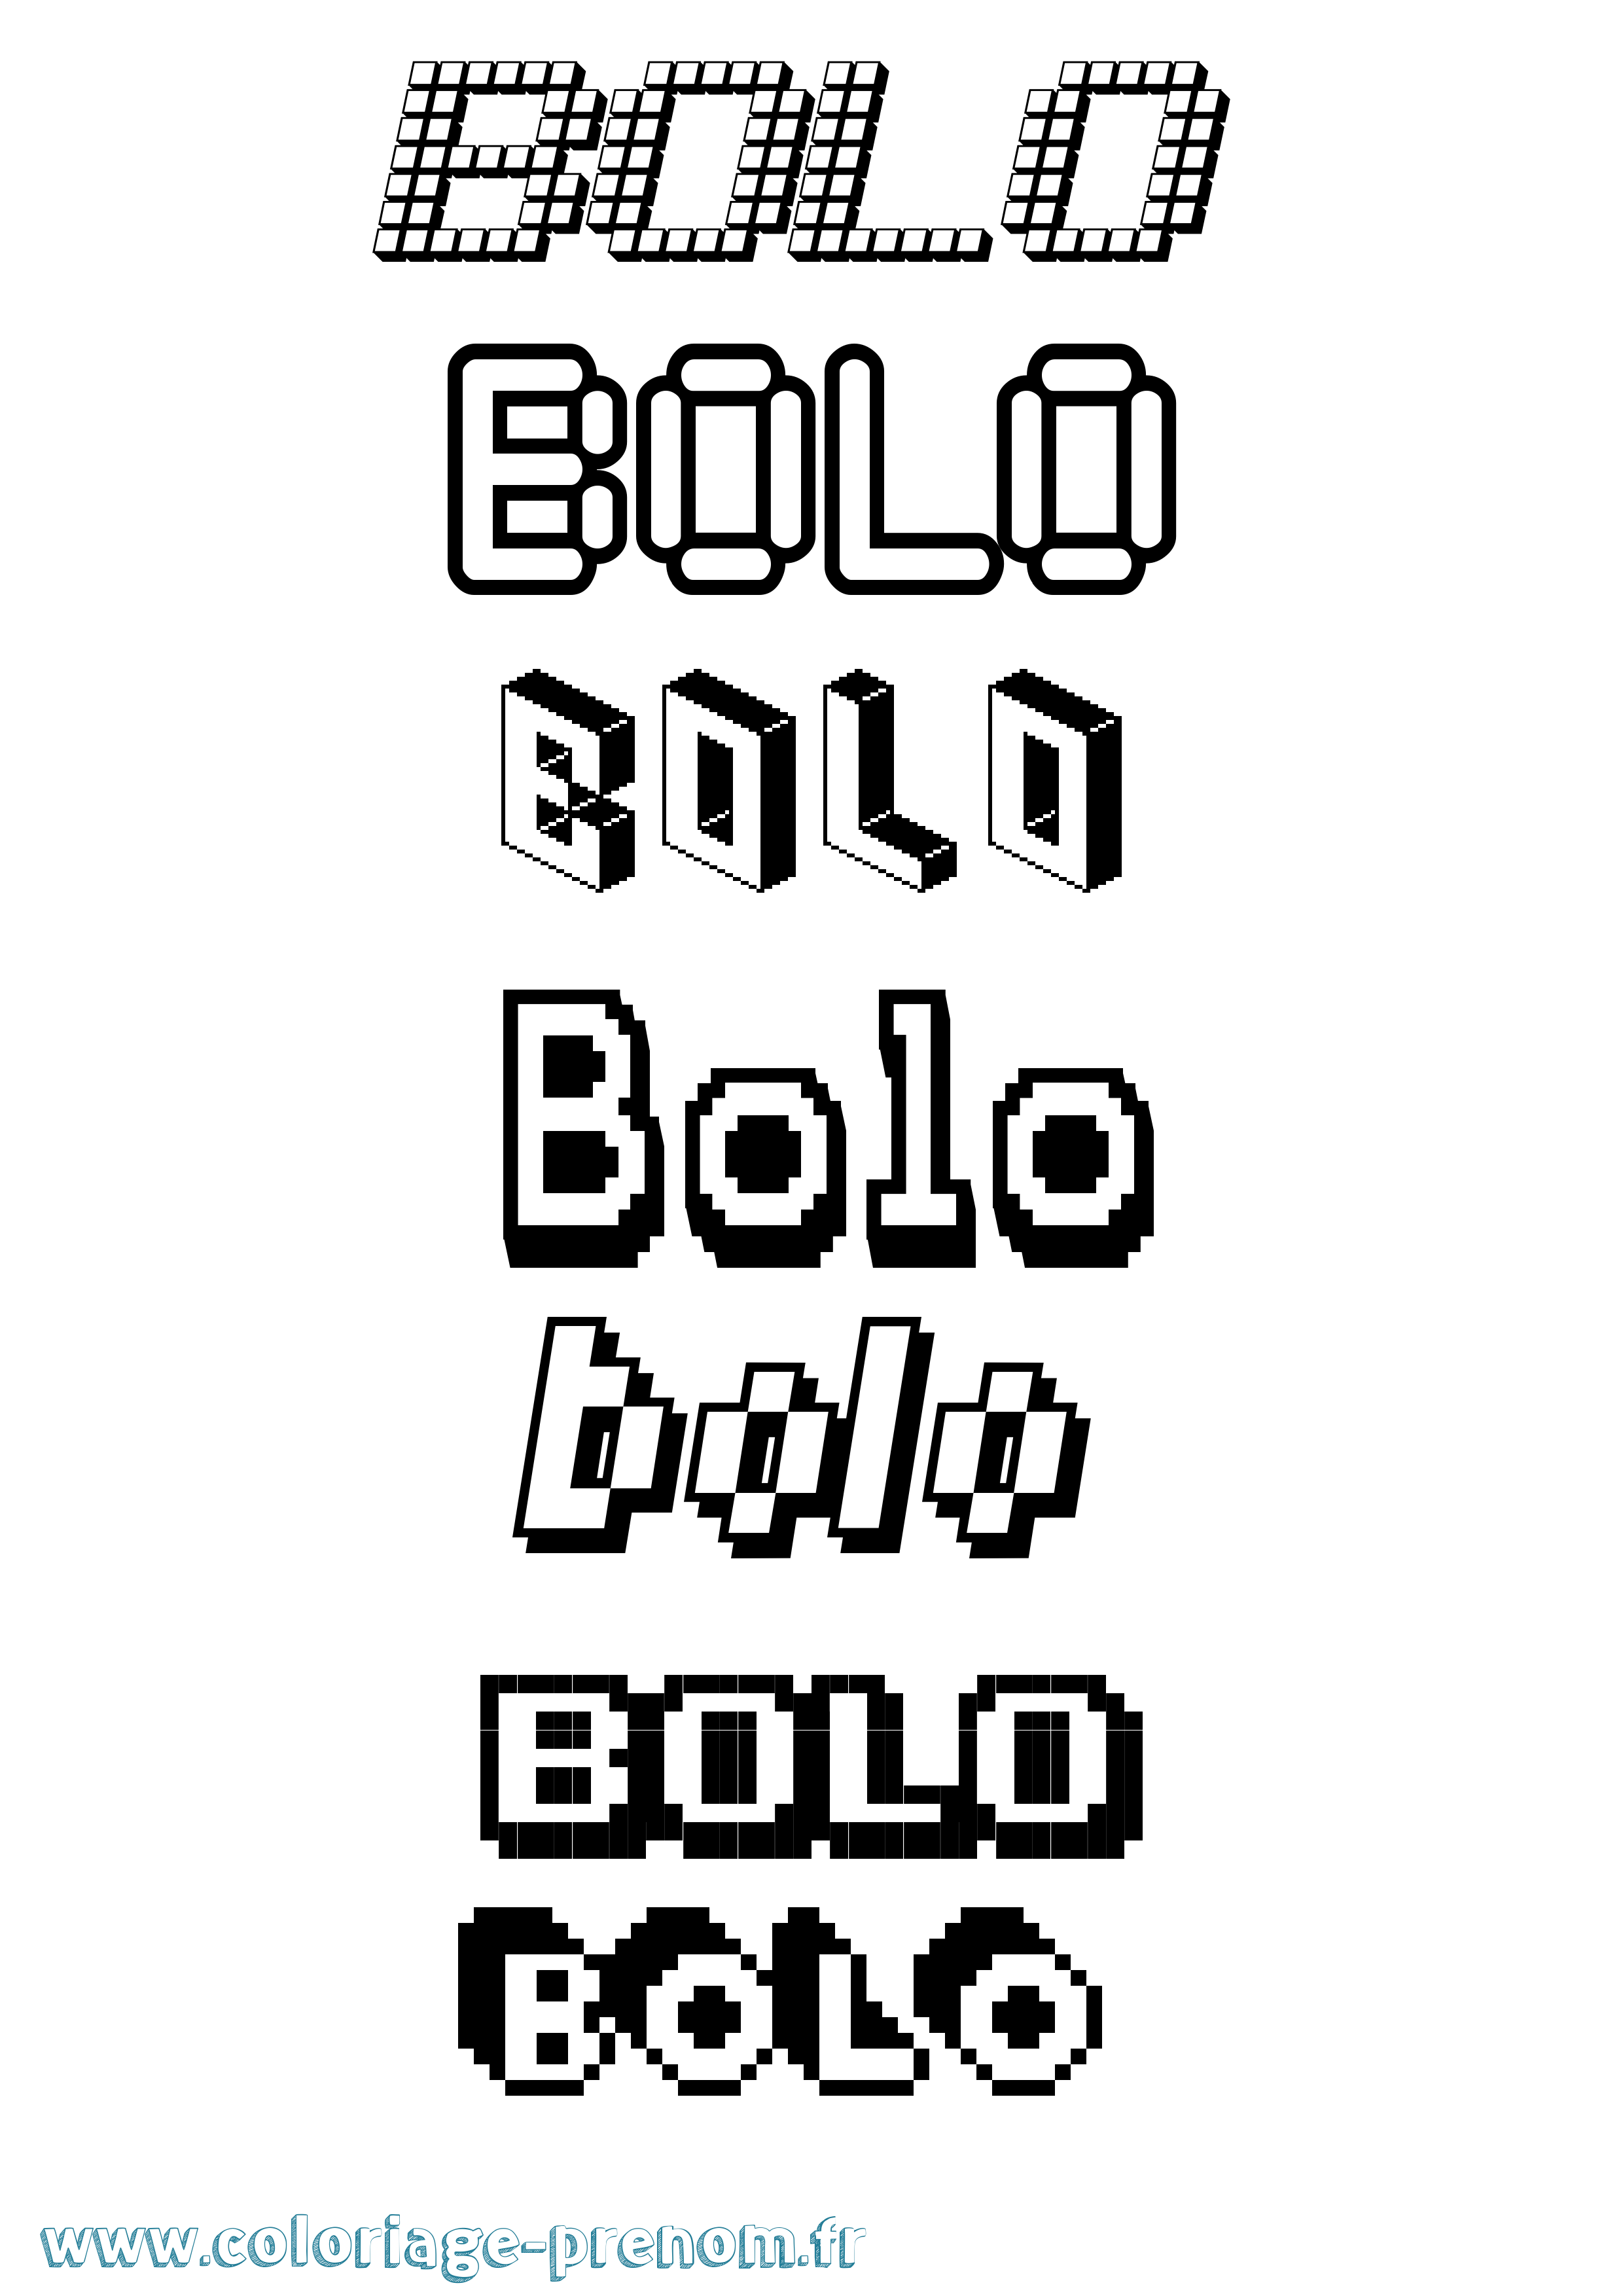 Coloriage prénom Bolo Pixel